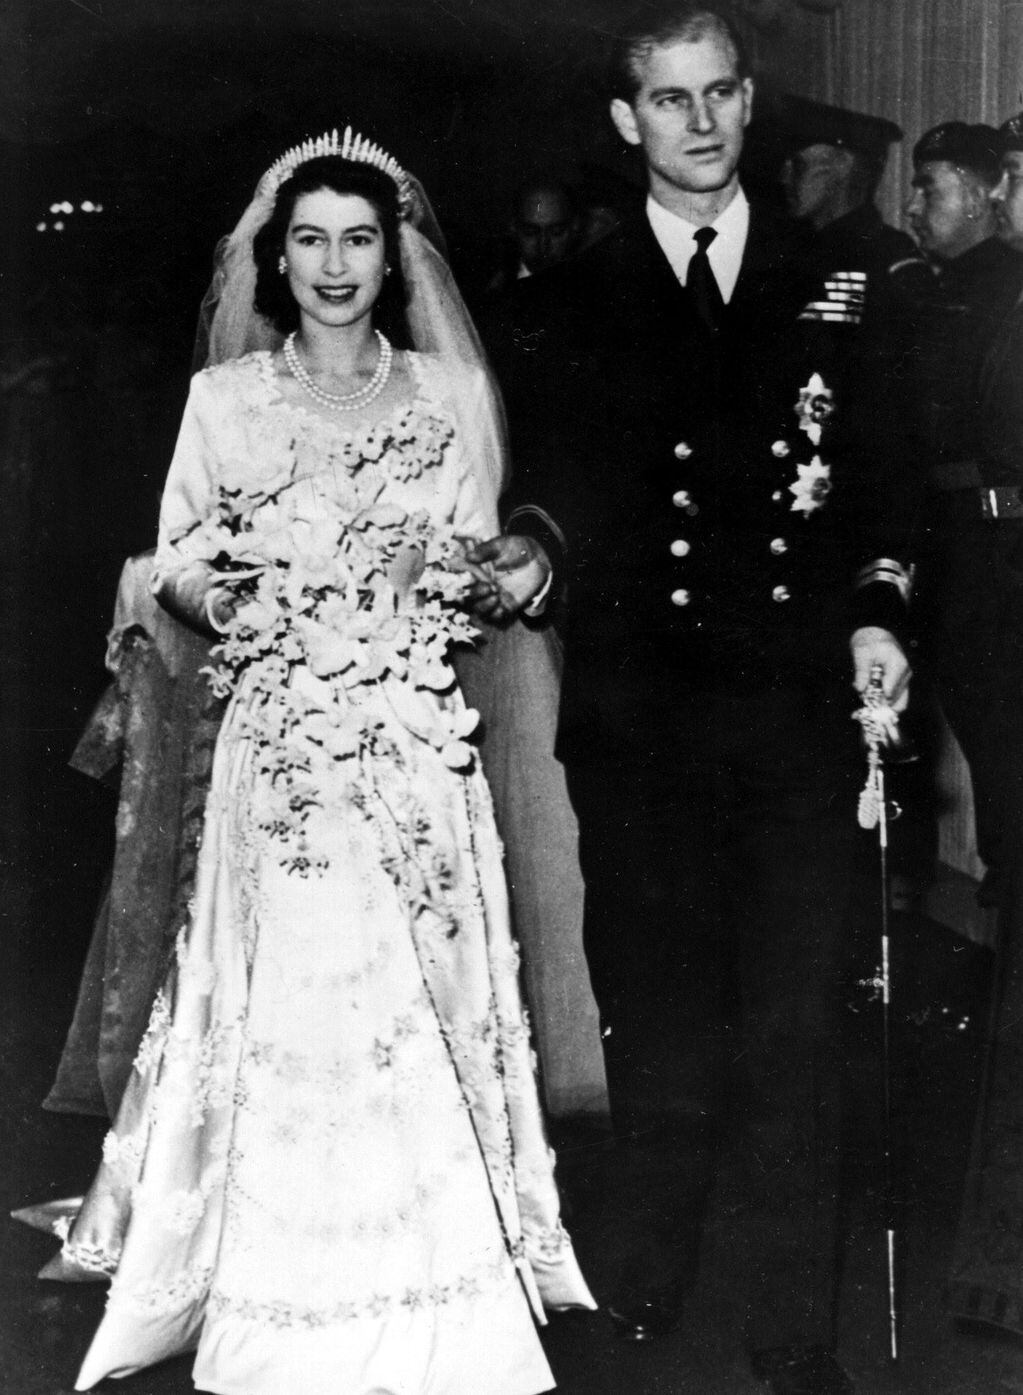 Foto de la boda real del duque de Edimburgo y la reina.